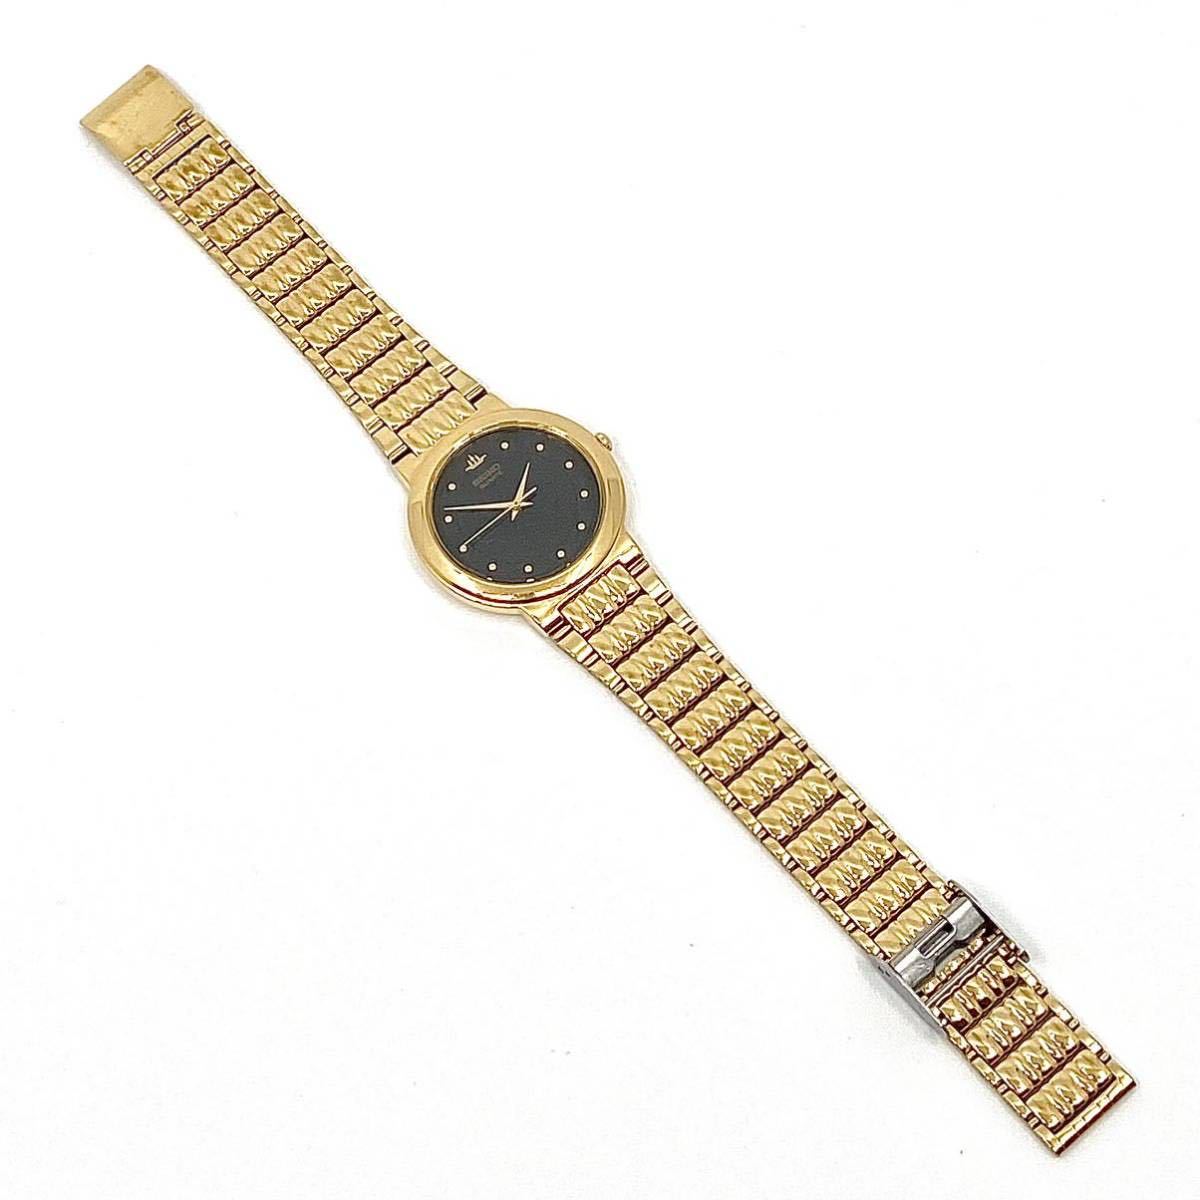 SEIKO 腕時計 ラウンド ドットインデックス 3針 クォーツ quartz ブラックフェイス ゴールド 黒 金 セイコー Y428_画像6